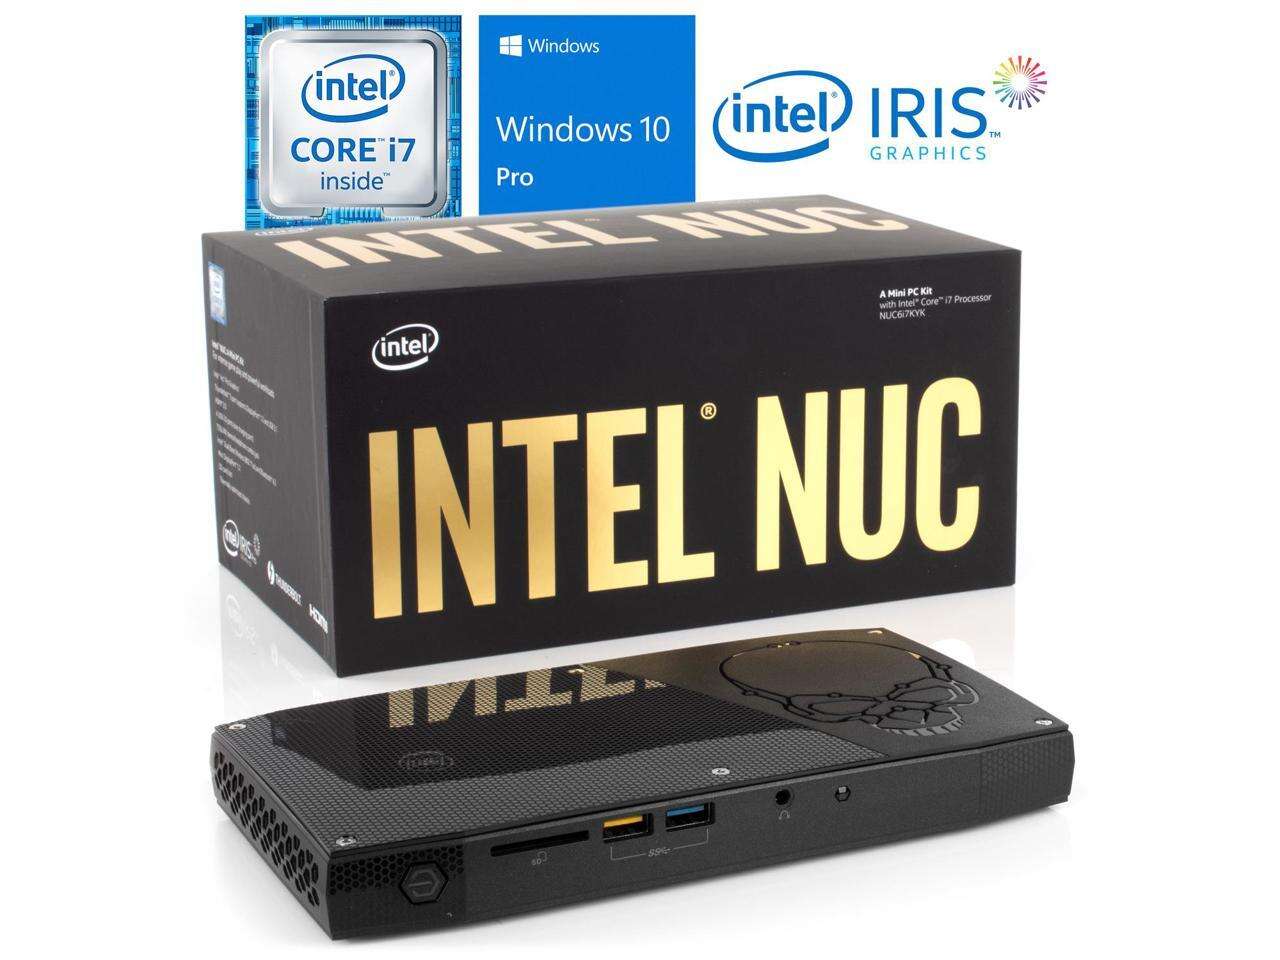 Intel NUC6i7KYK Mini PC, Intel Core i7-6770HQ Upto 3.5GHz, 8GB RAM, 128GB NVMe SSD, HDMI, Thunderbolt , Mini DisplayPort, Card Reader, Wi-Fi, Bluetooth, Windows 10 Pro